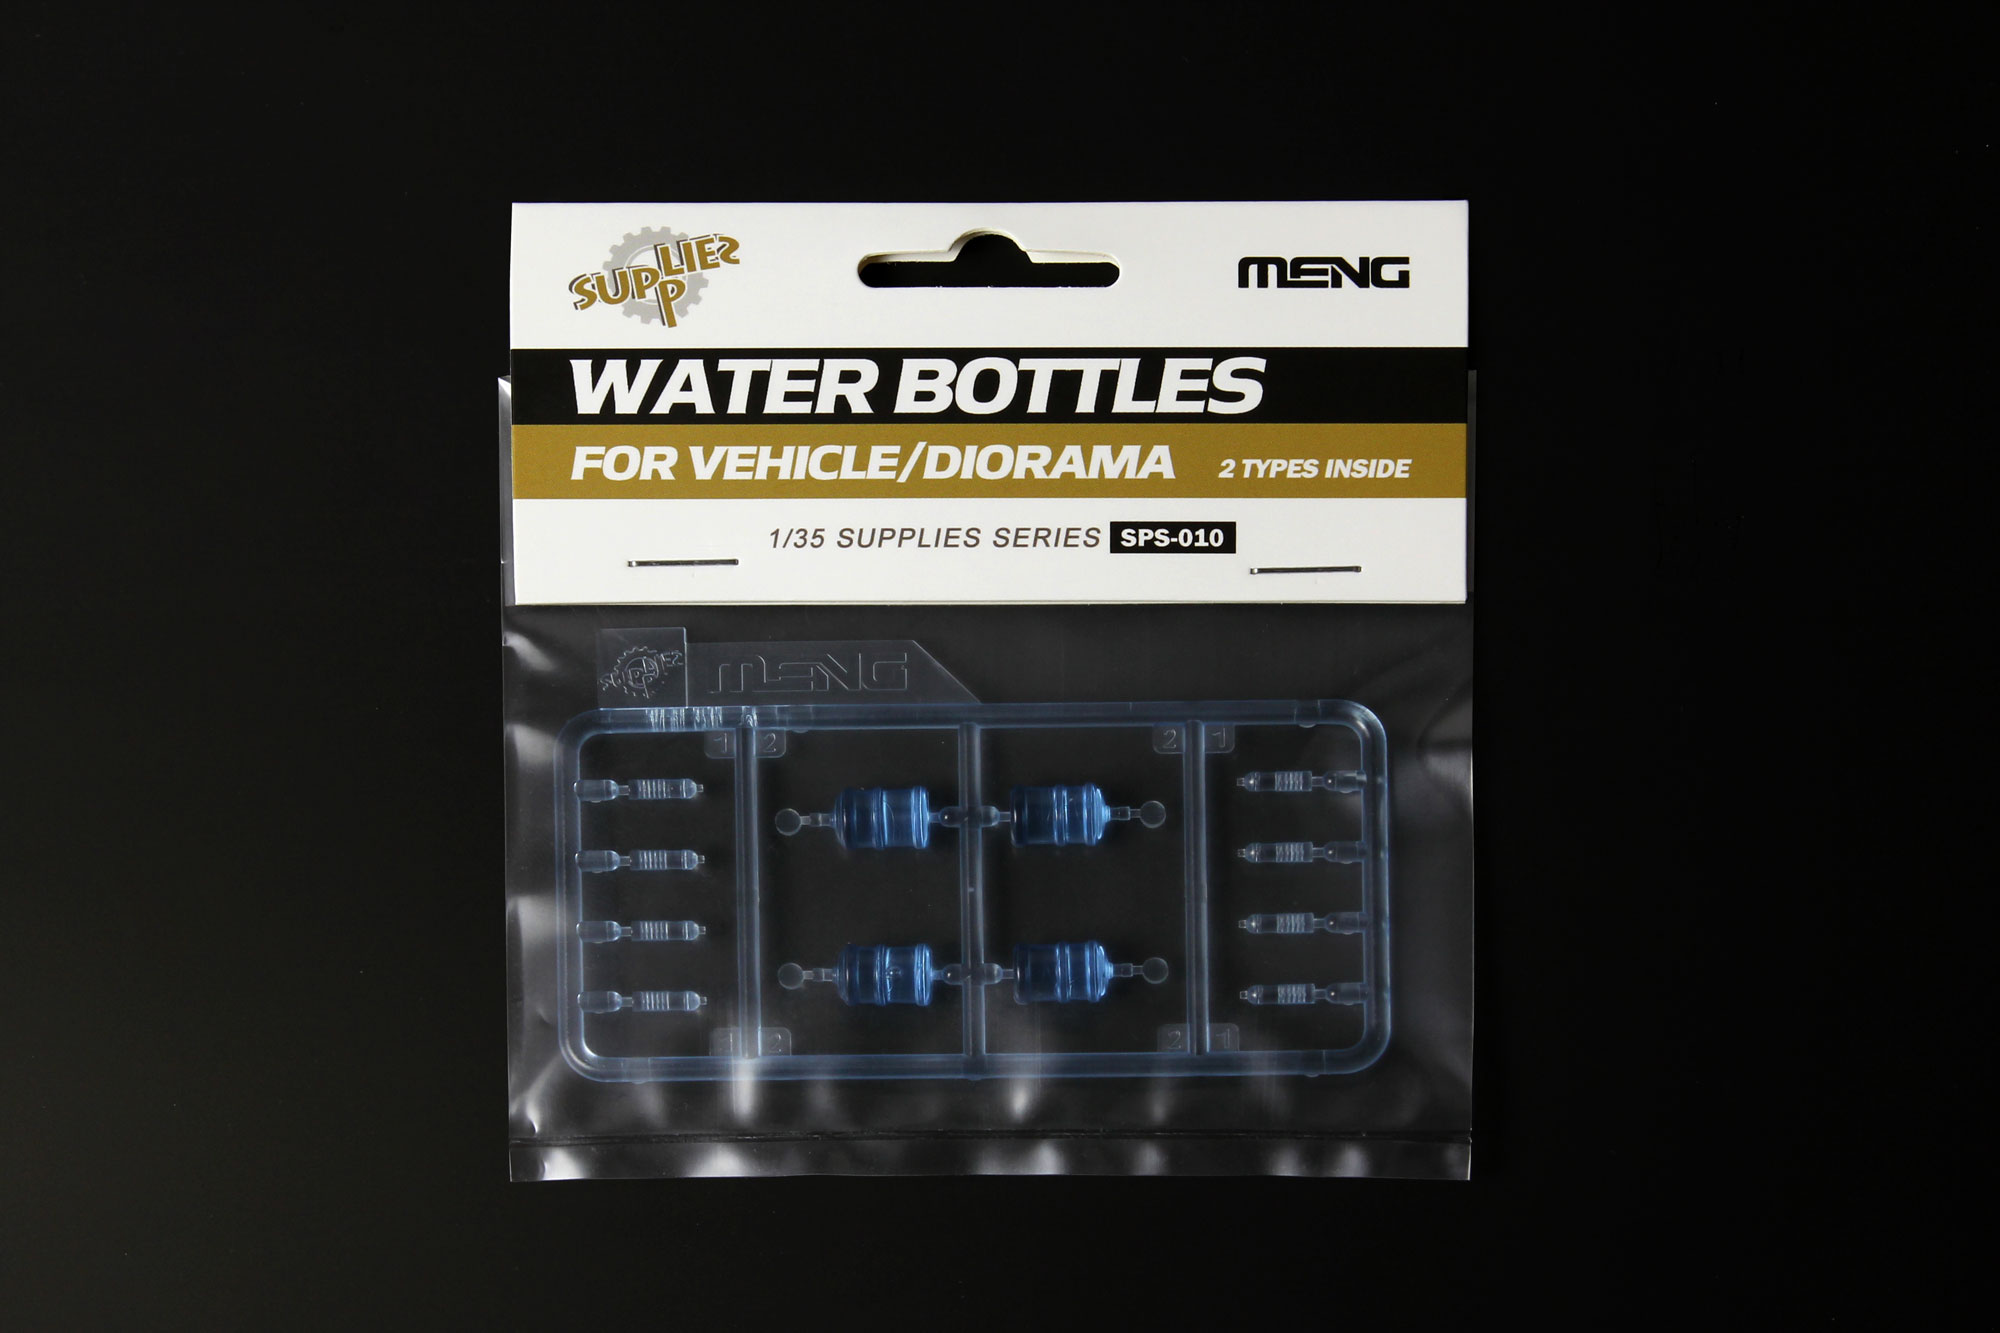 Wasserflaschen - Water Bottles for Vehicle/Diorama